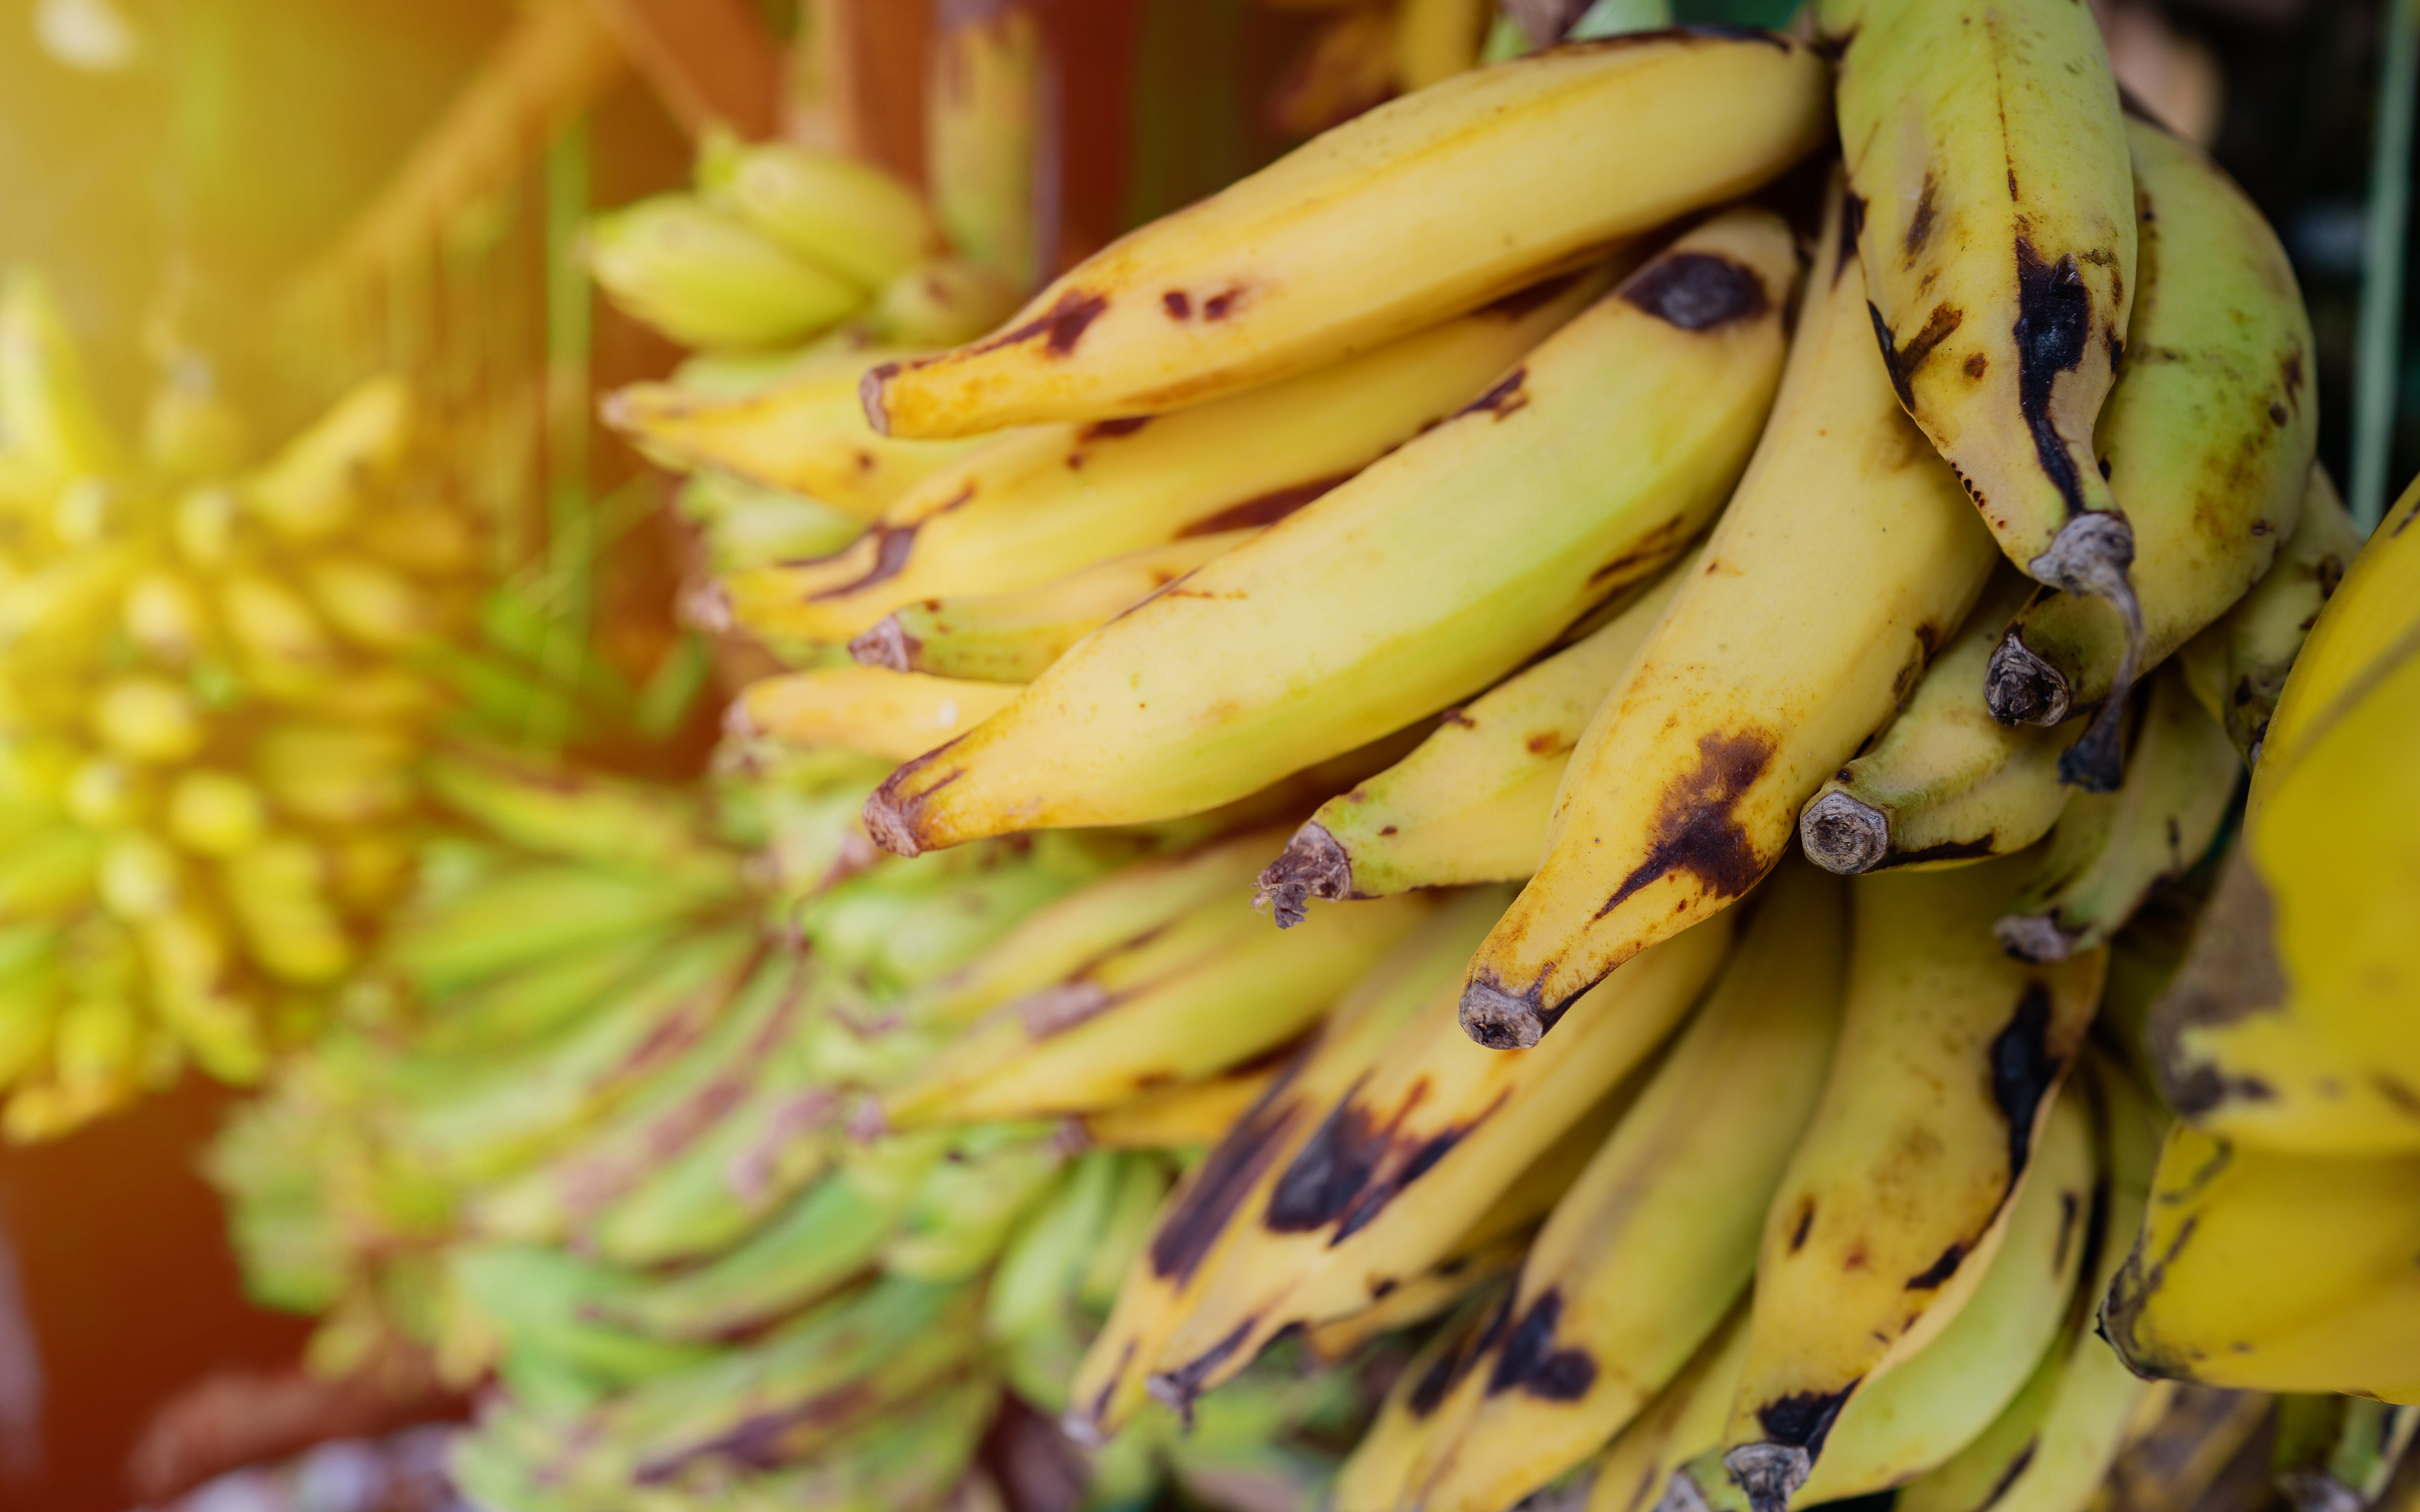     Un régulateur de croissance interdit pour les bananes, utilisé en Martinique ?

